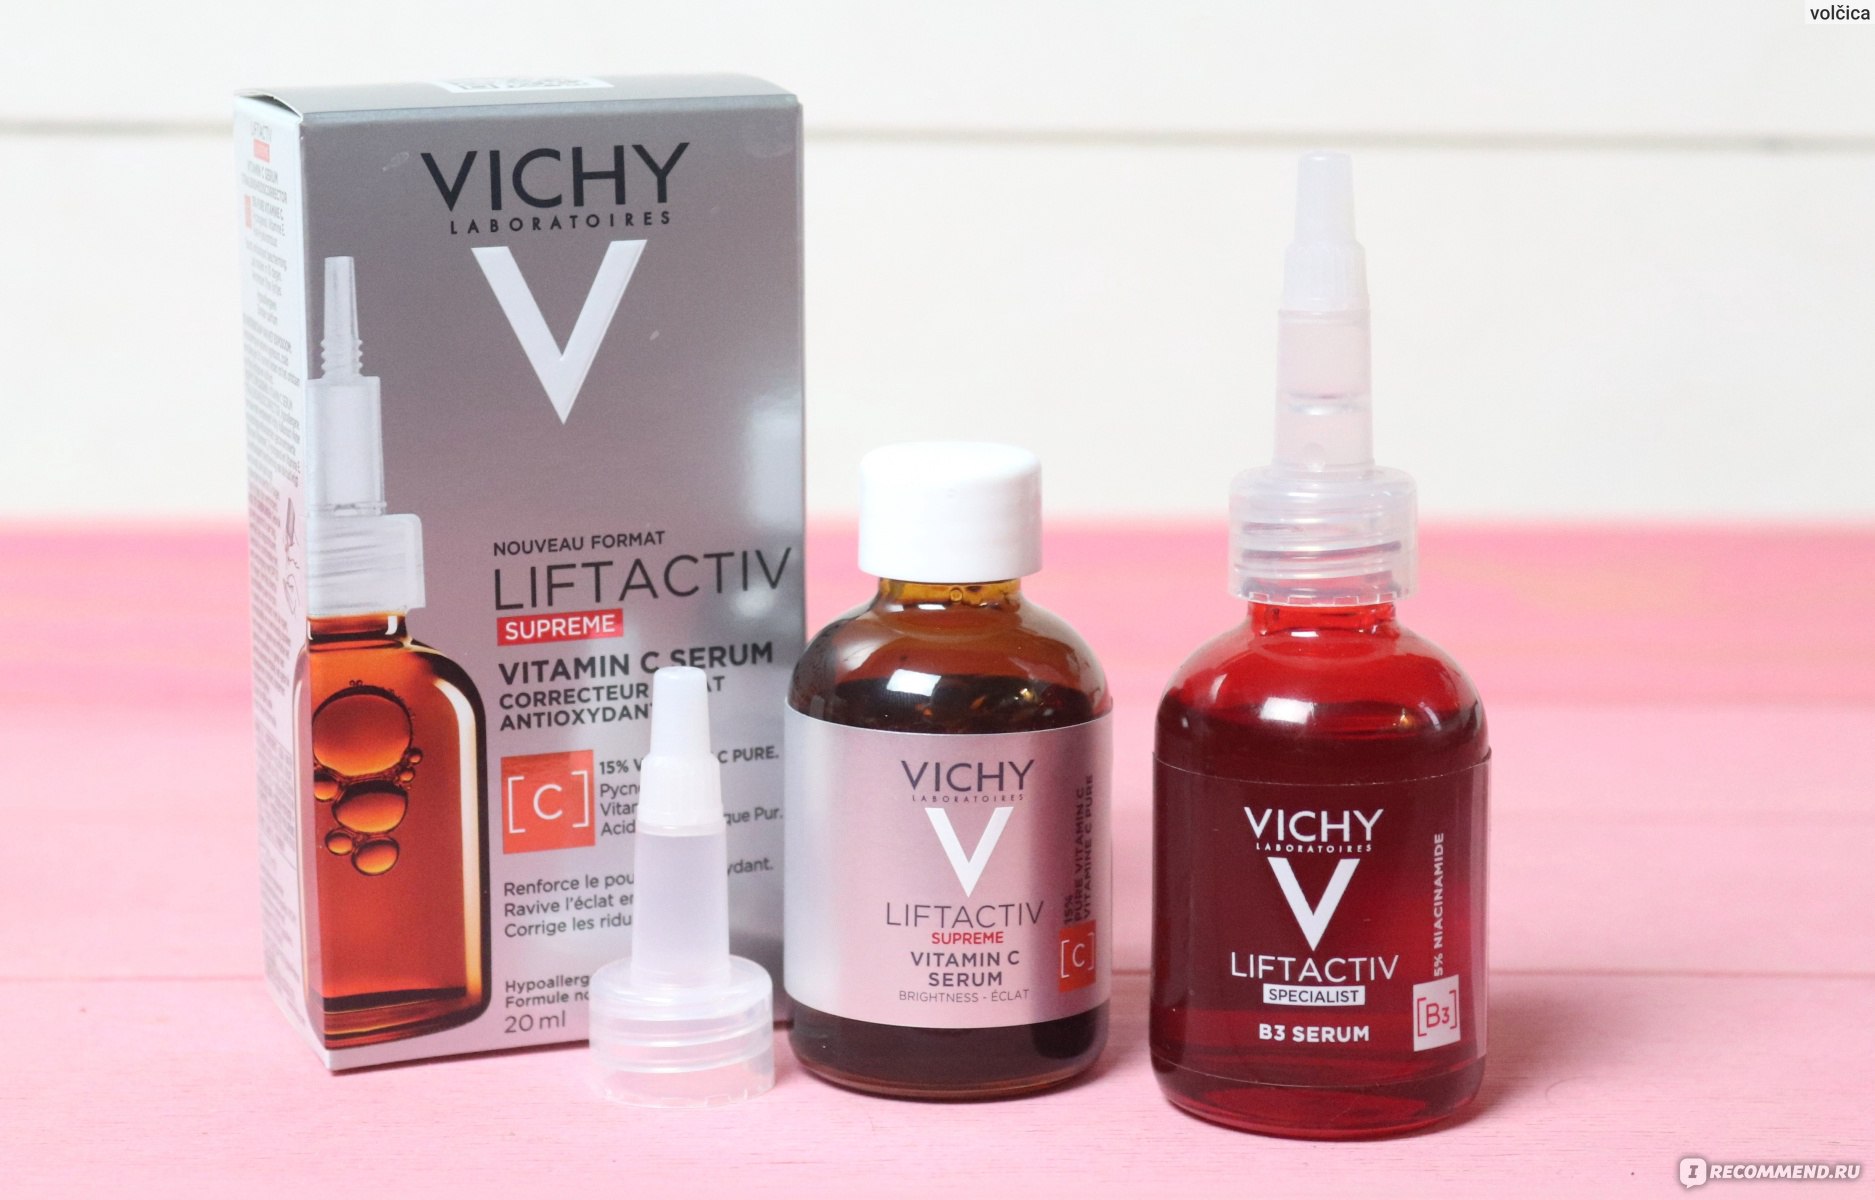 Сыворотка для лица Vichy Liftactiv Specialist B3 Serum с витамином B3 против пигментации и морщин фото